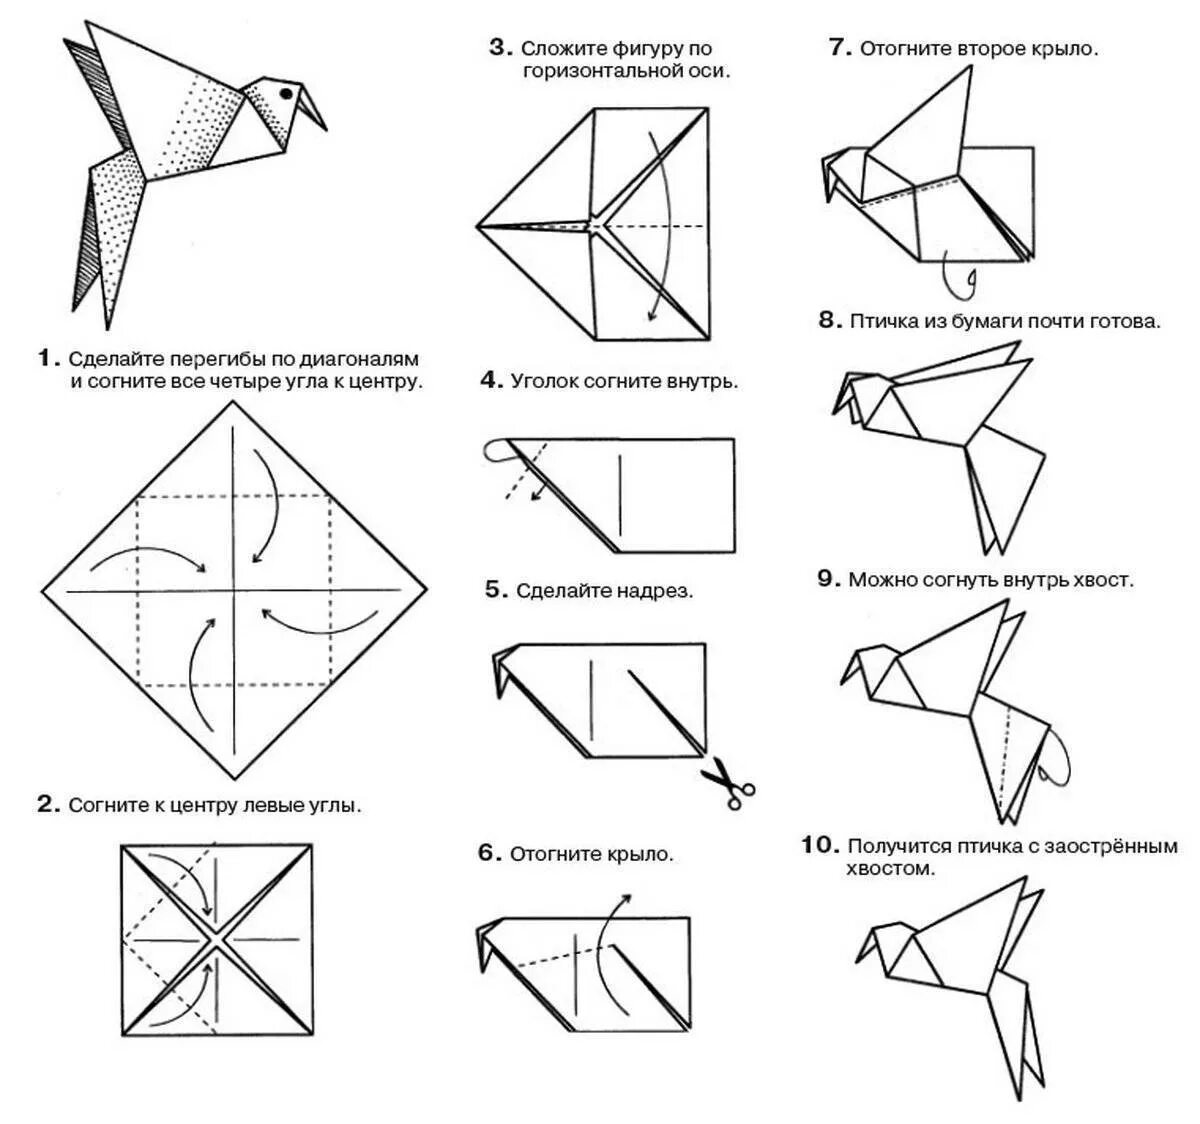 Инструкция как сделать из бумаги. Птичка из бумаги схема складывания пошагово. Птица оригами из бумаги простая схема для детей. Оригами из бумаги пошагово 3 класс. Оригами из бумаги для детей инструкция пошагово.